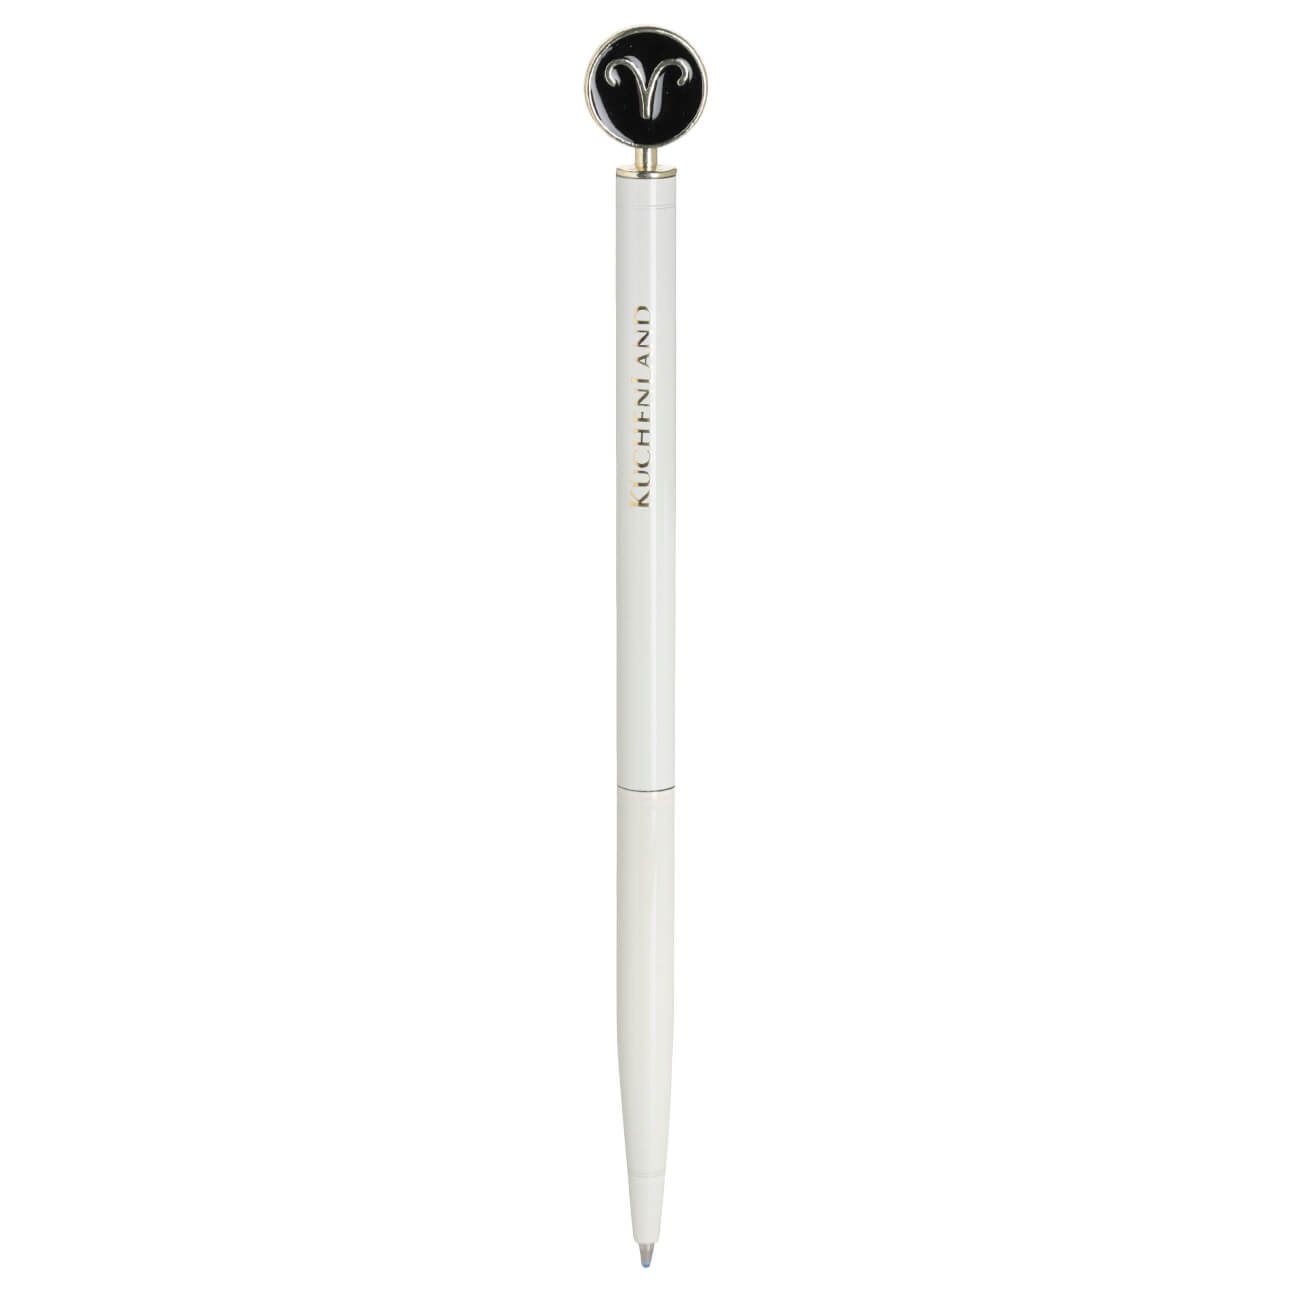 Ручка шариковая, 15 см, с фигуркой, сталь, молочно-золотистая, Овен, Zodiac грабли длина 25 см деревянная ручка